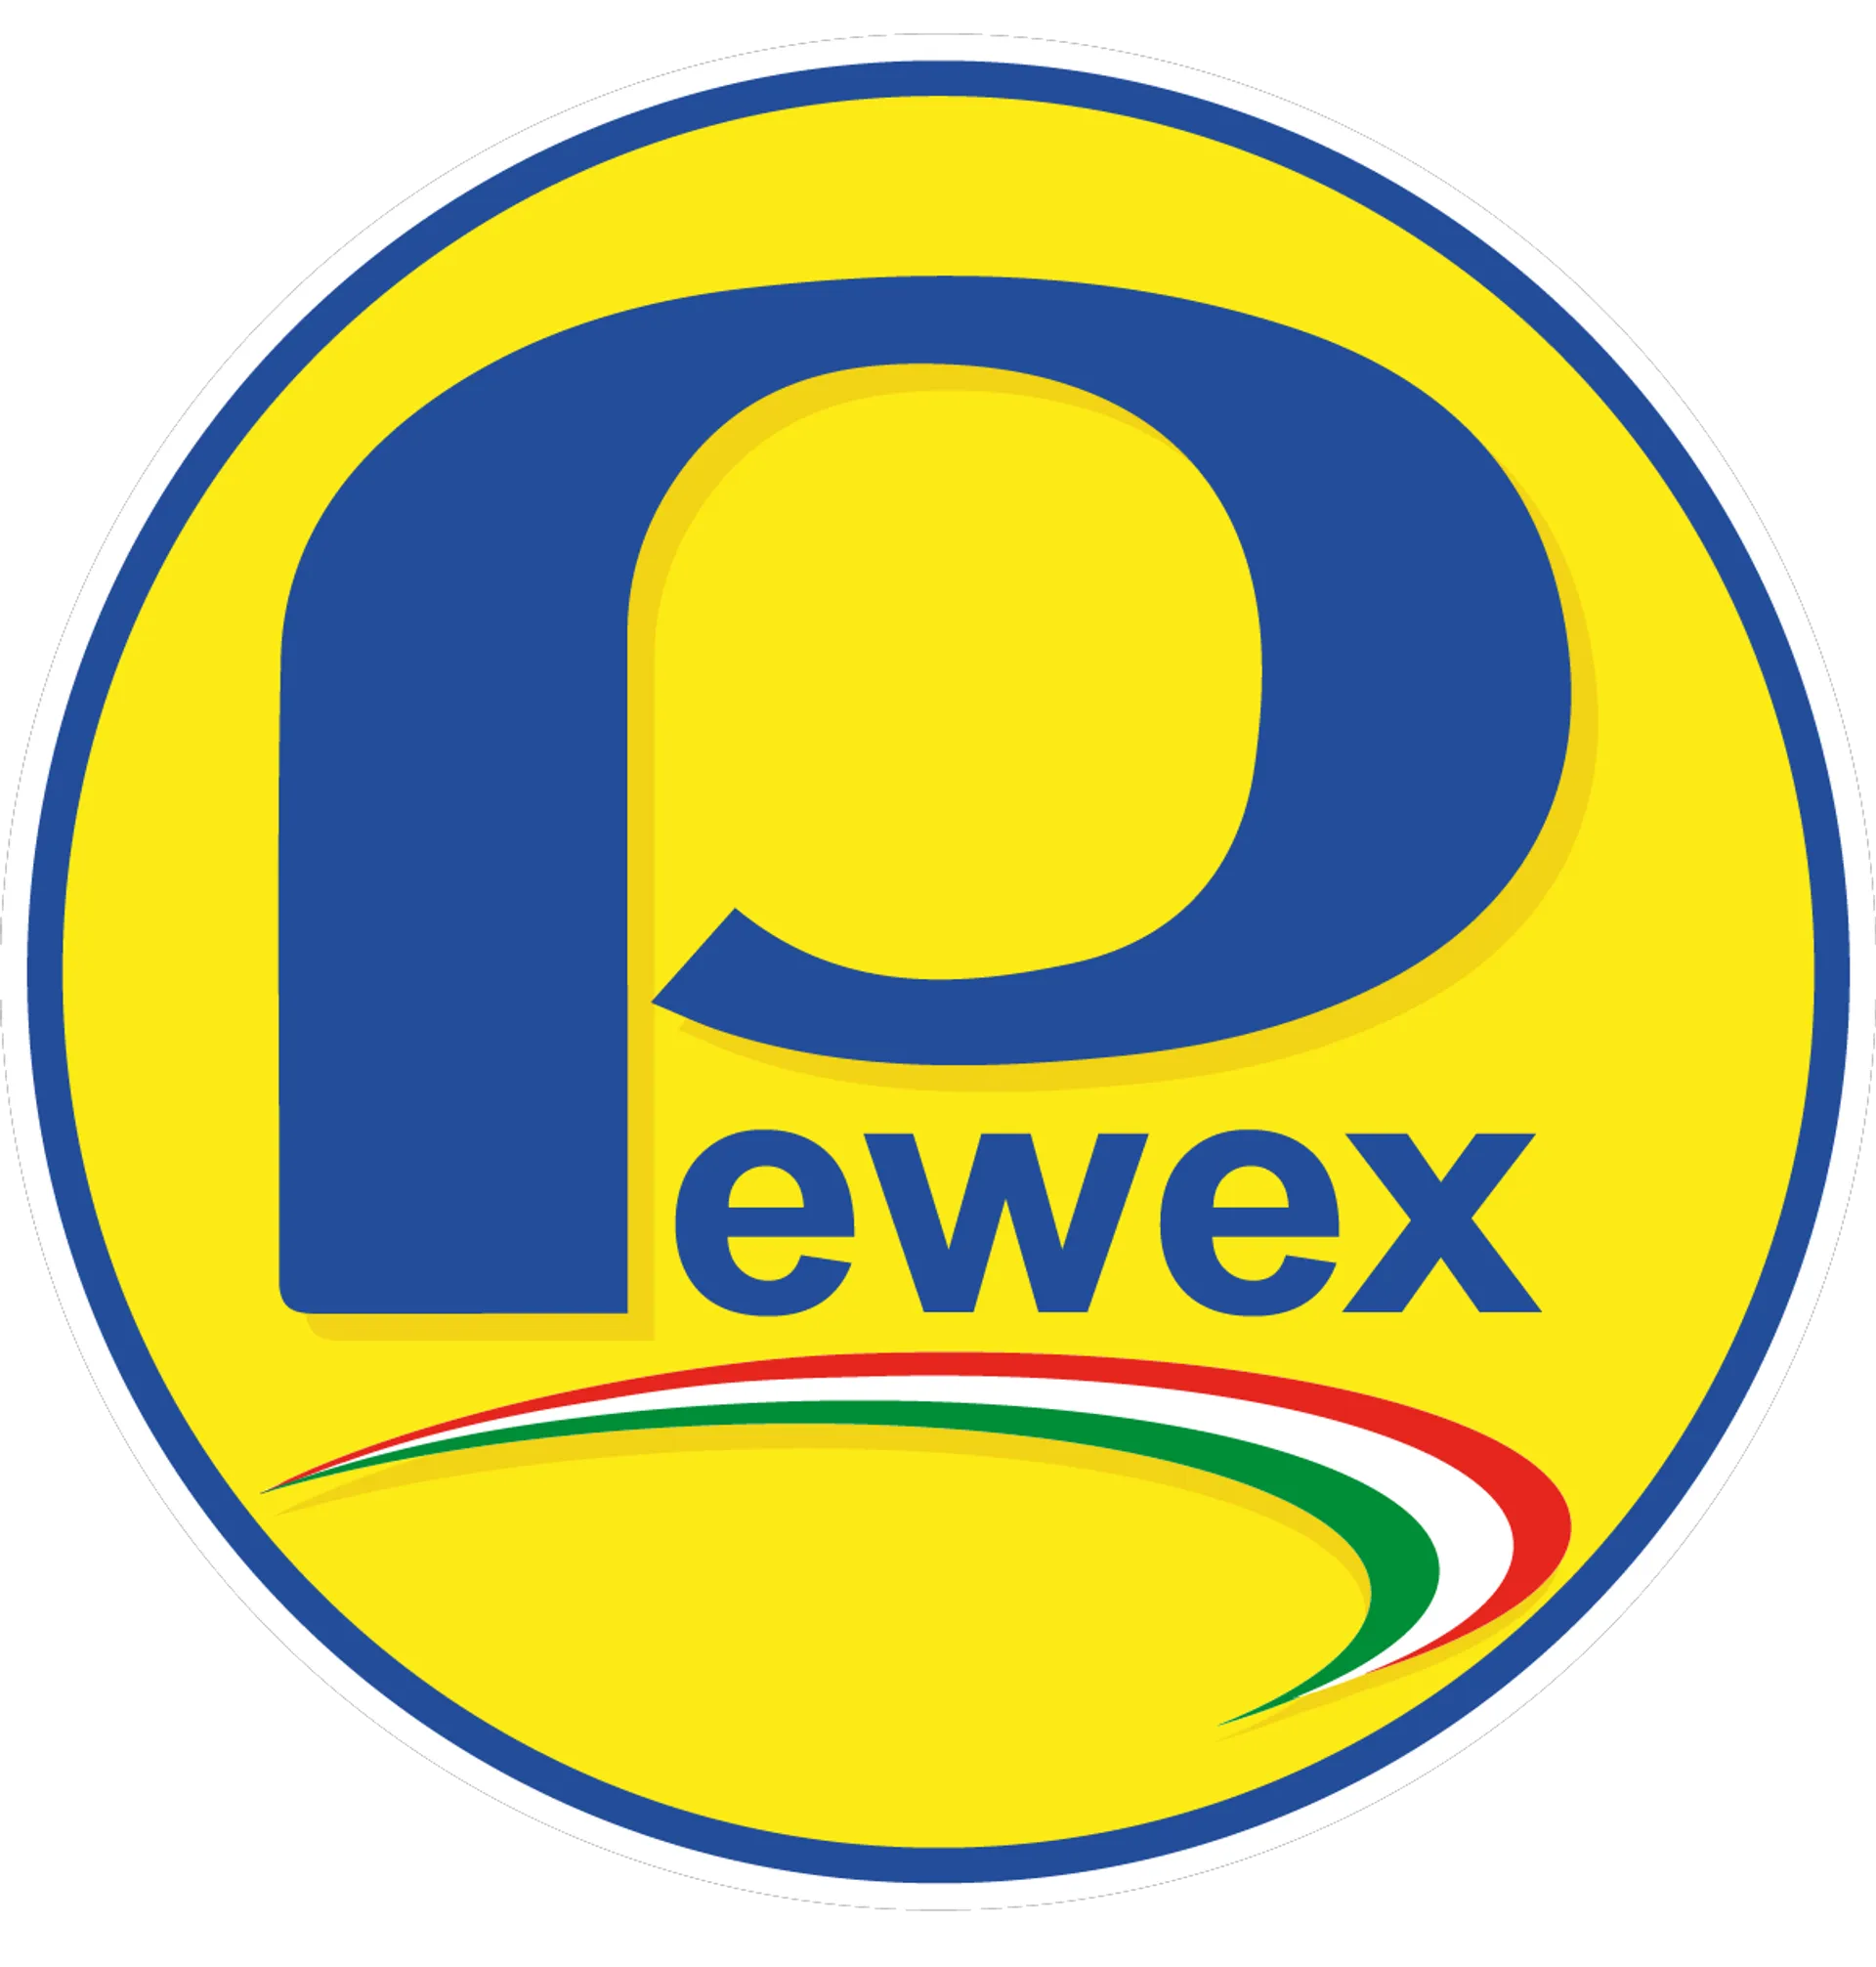 PEWEX logo